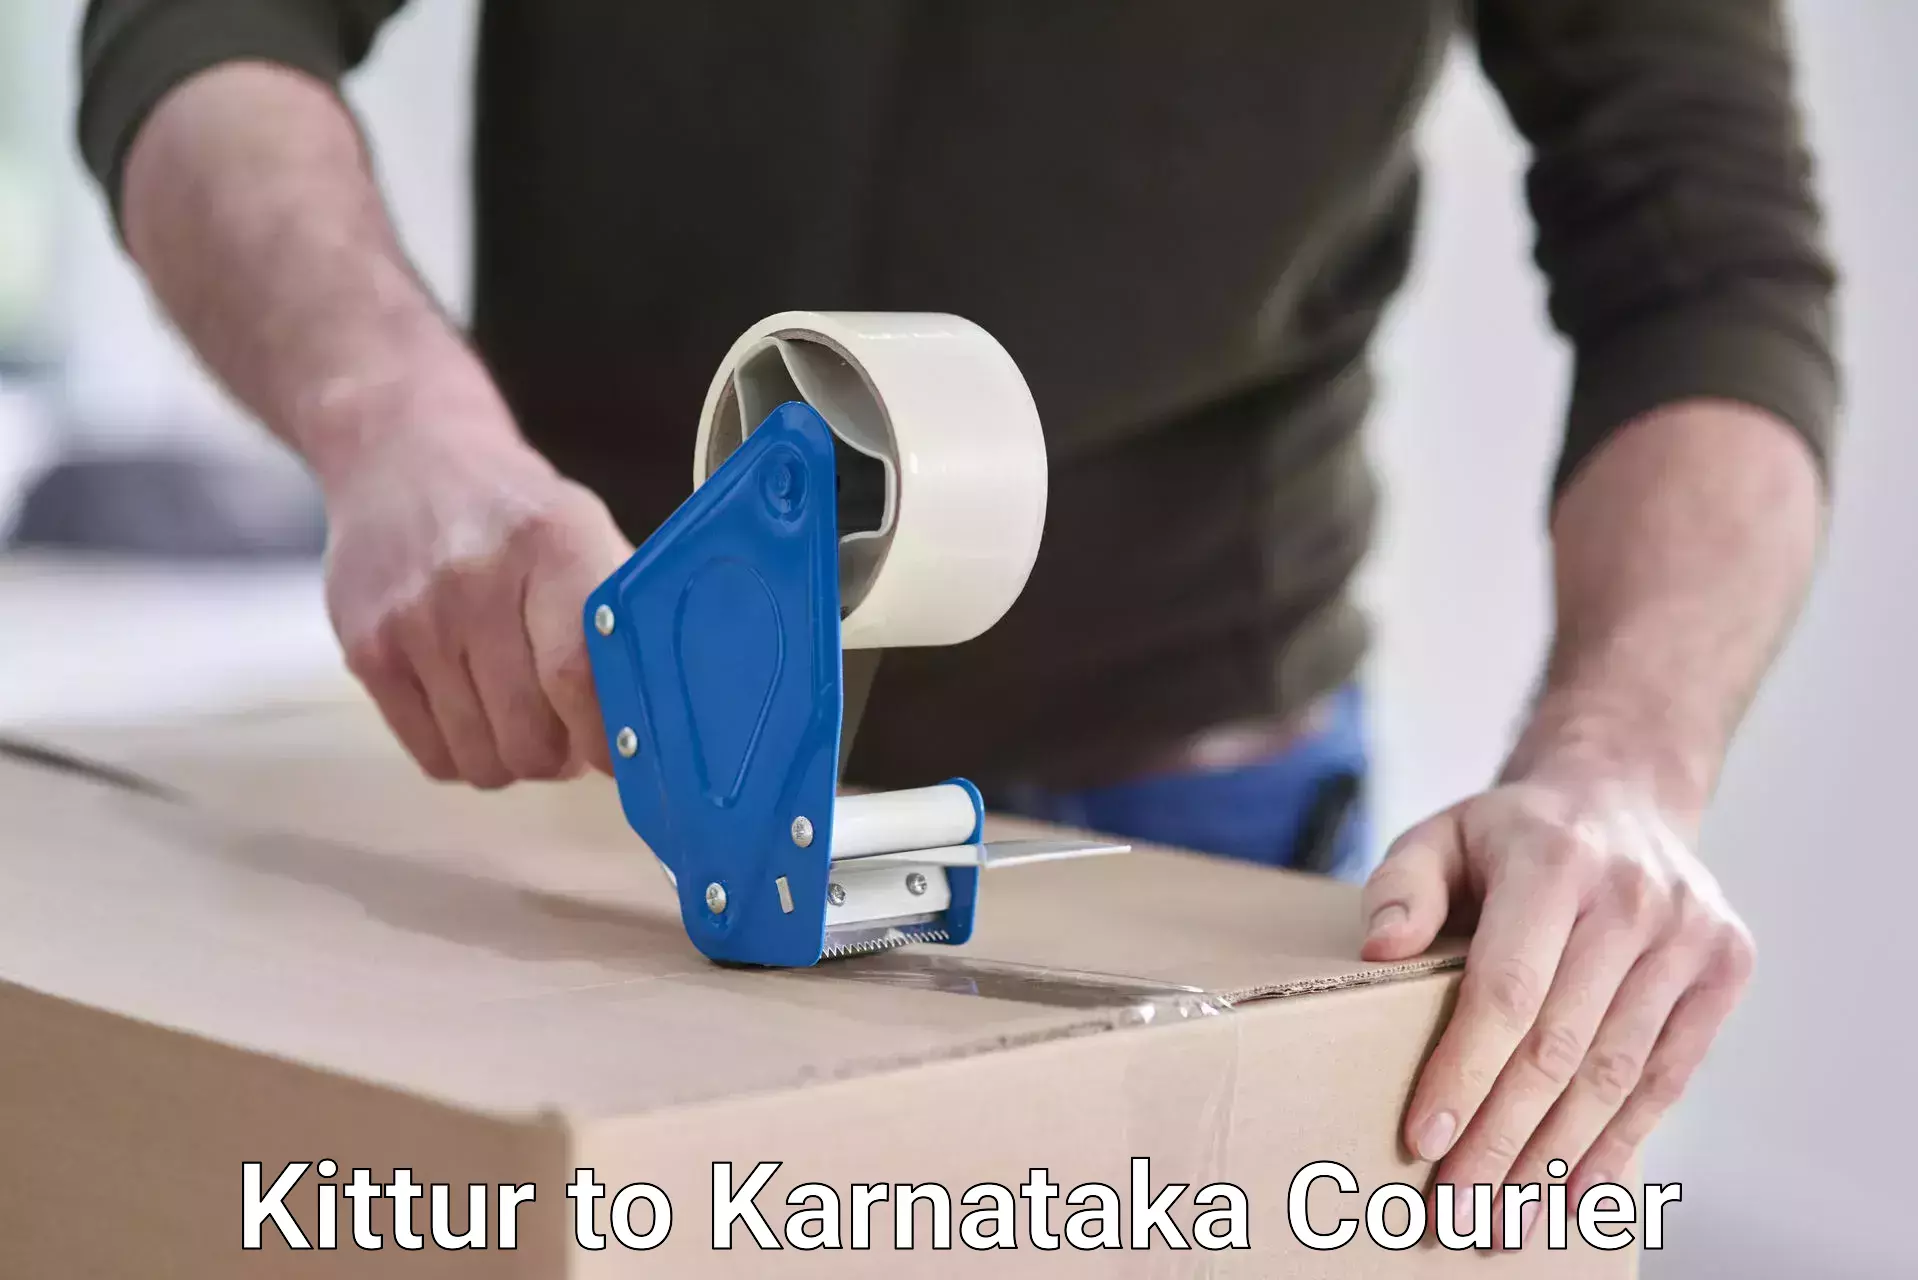 Digital shipping tools Kittur to Kanjarakatte